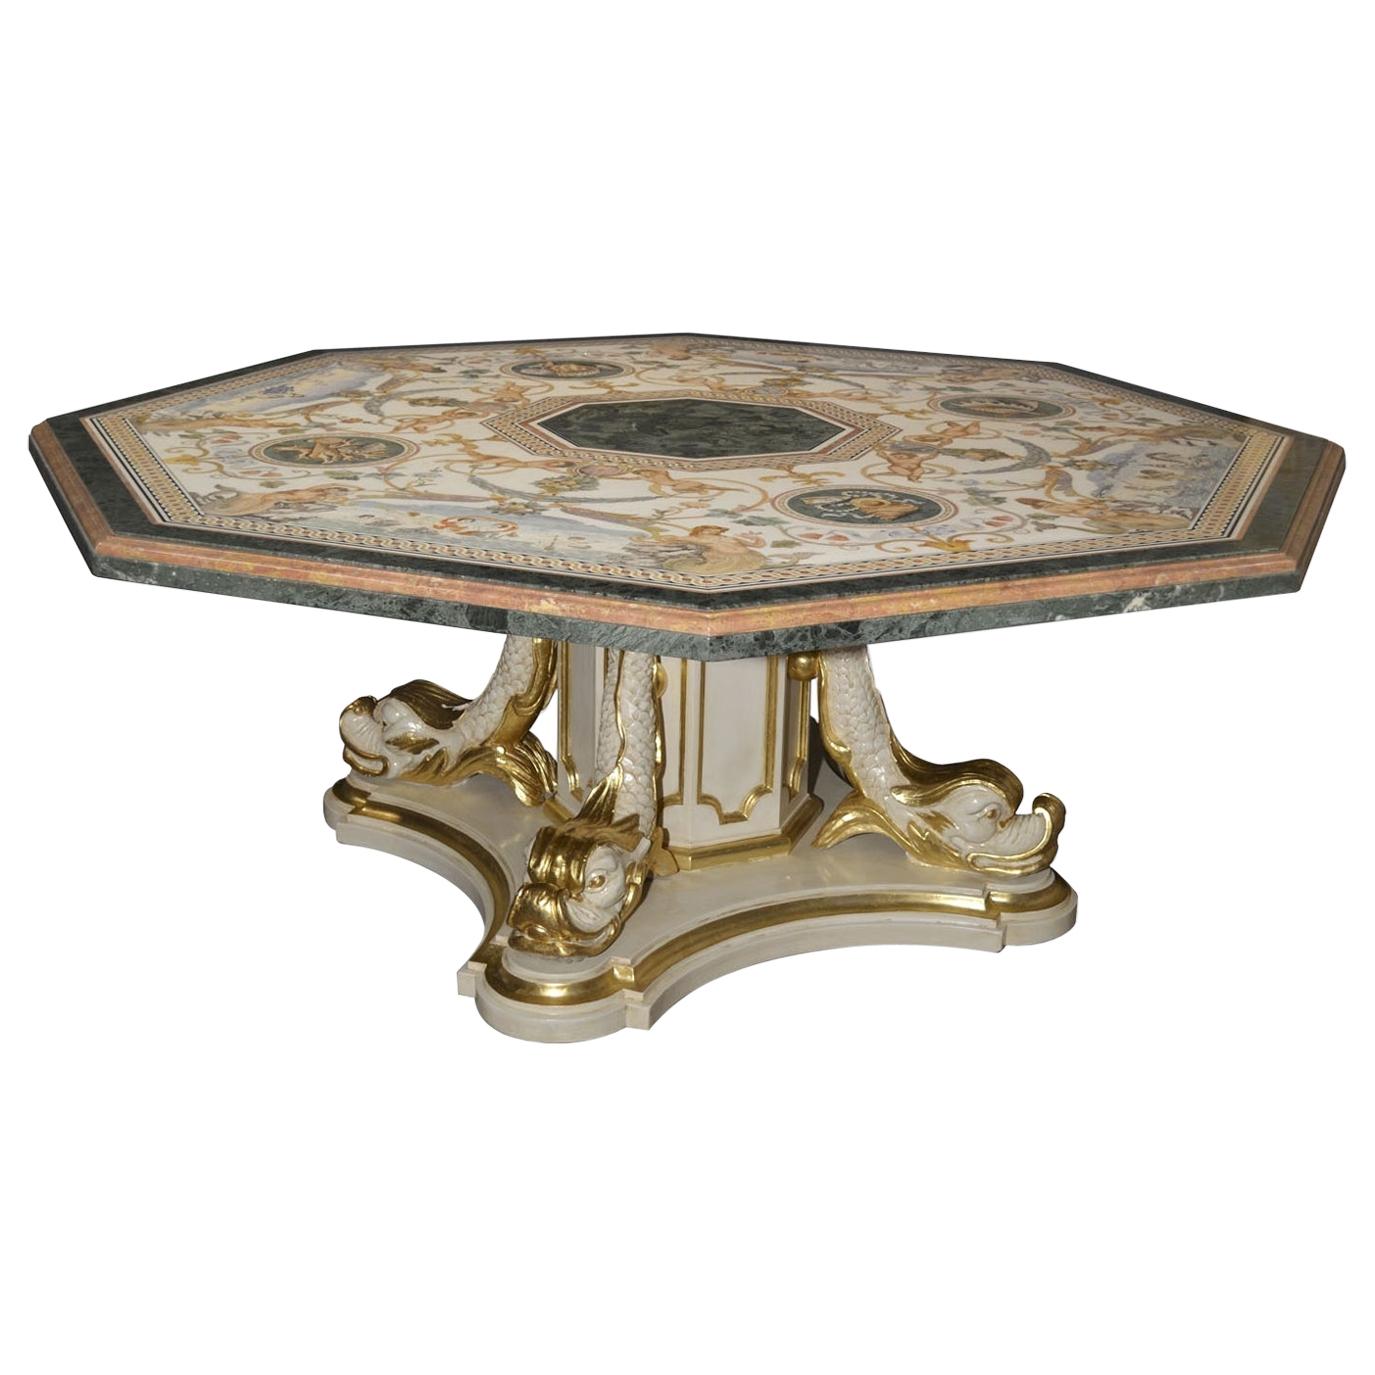 Grande table en marbre, plateau en marqueterie, base en bois sculpté, faite à la main en Italie par Cupioli 